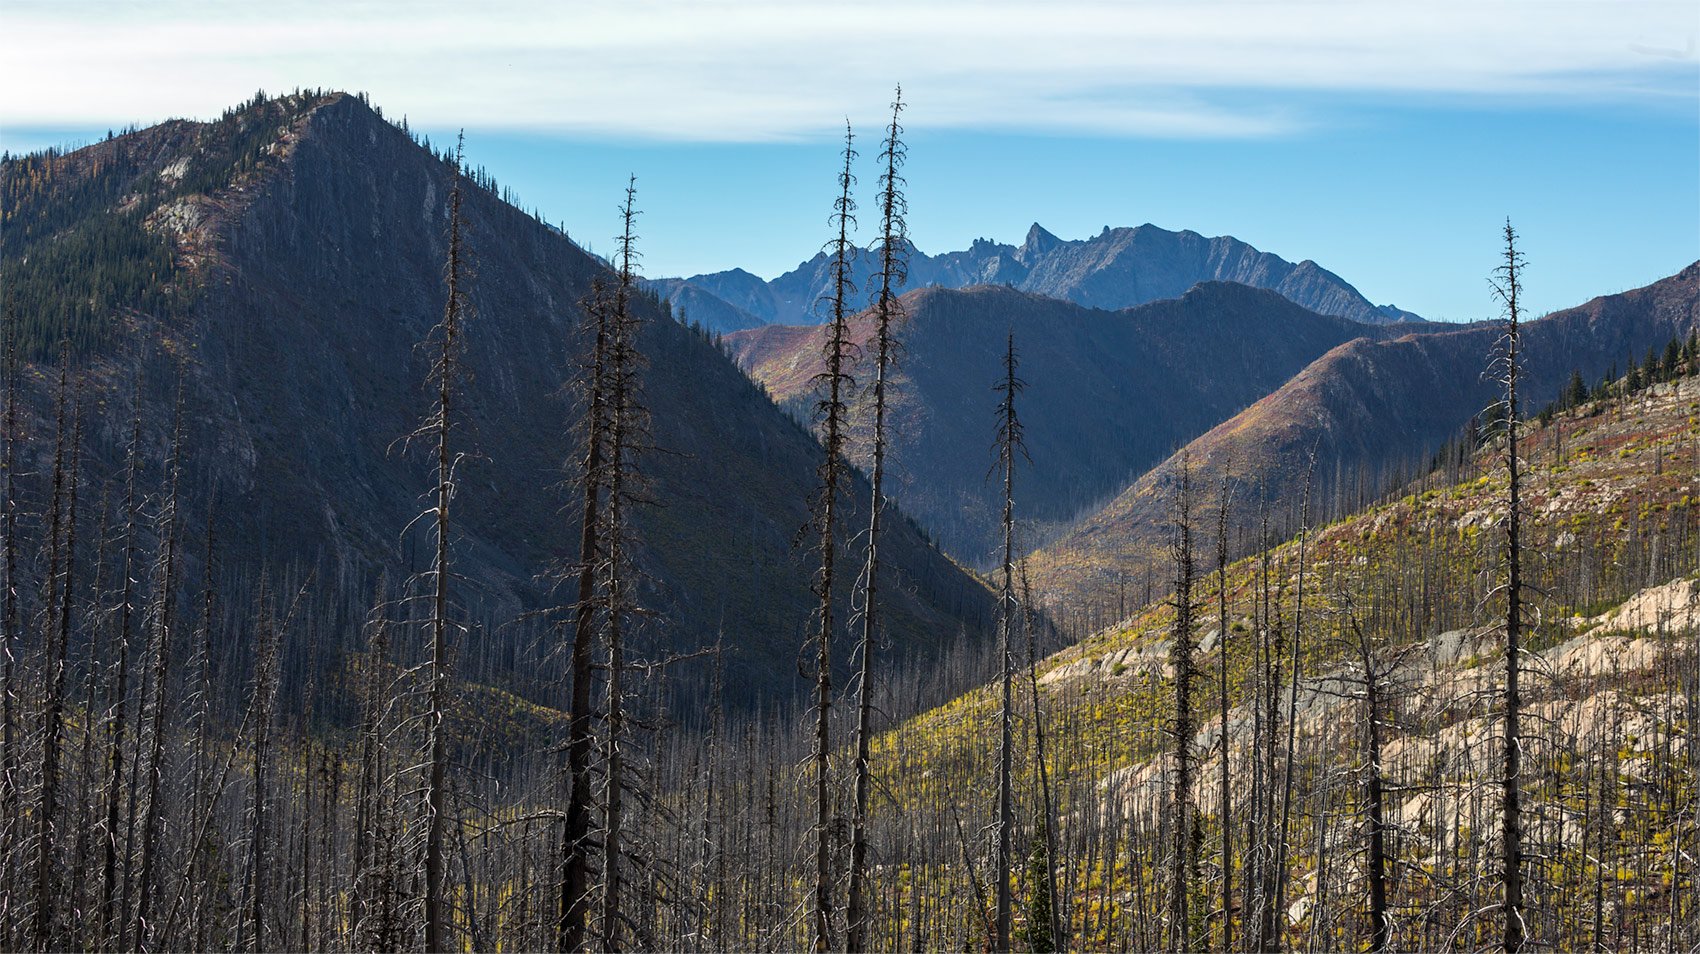 North Cascades Burn Scar. Study #1. North Cascades National Park. WA. 2018